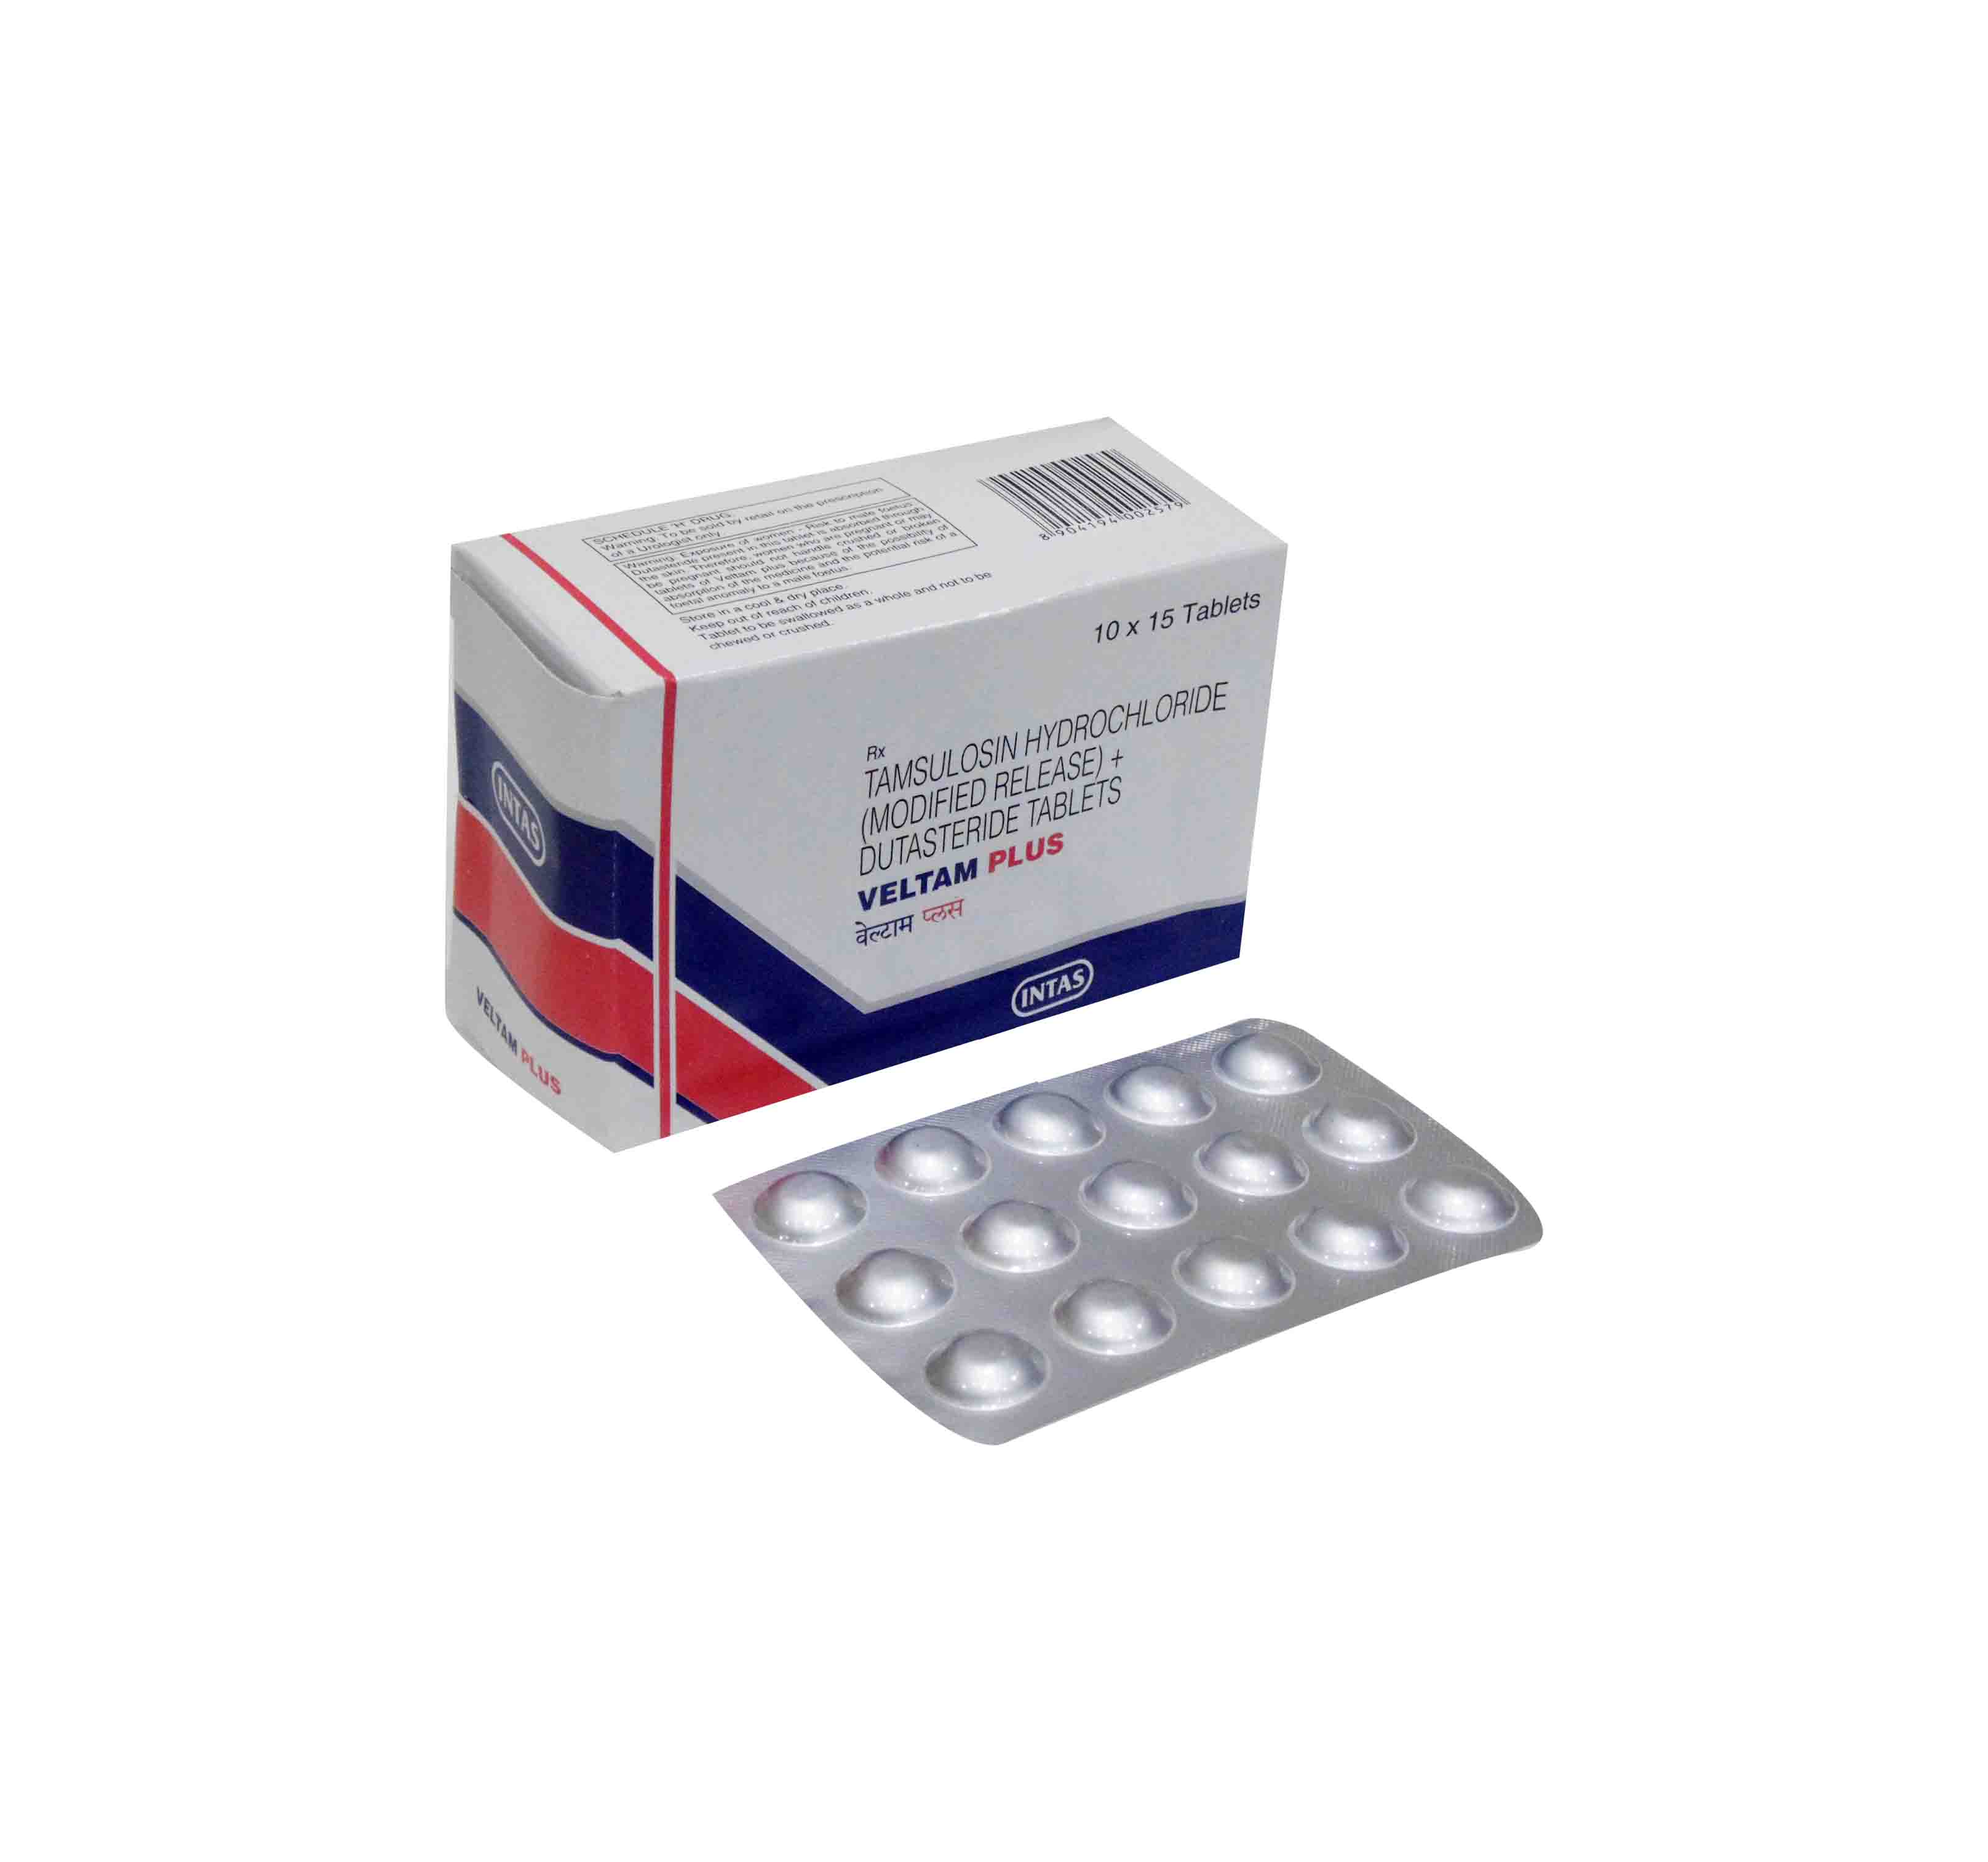 PRZ-Sildenafil 100 mg - Canada Pharmacy Generic Silagra, Suhagra